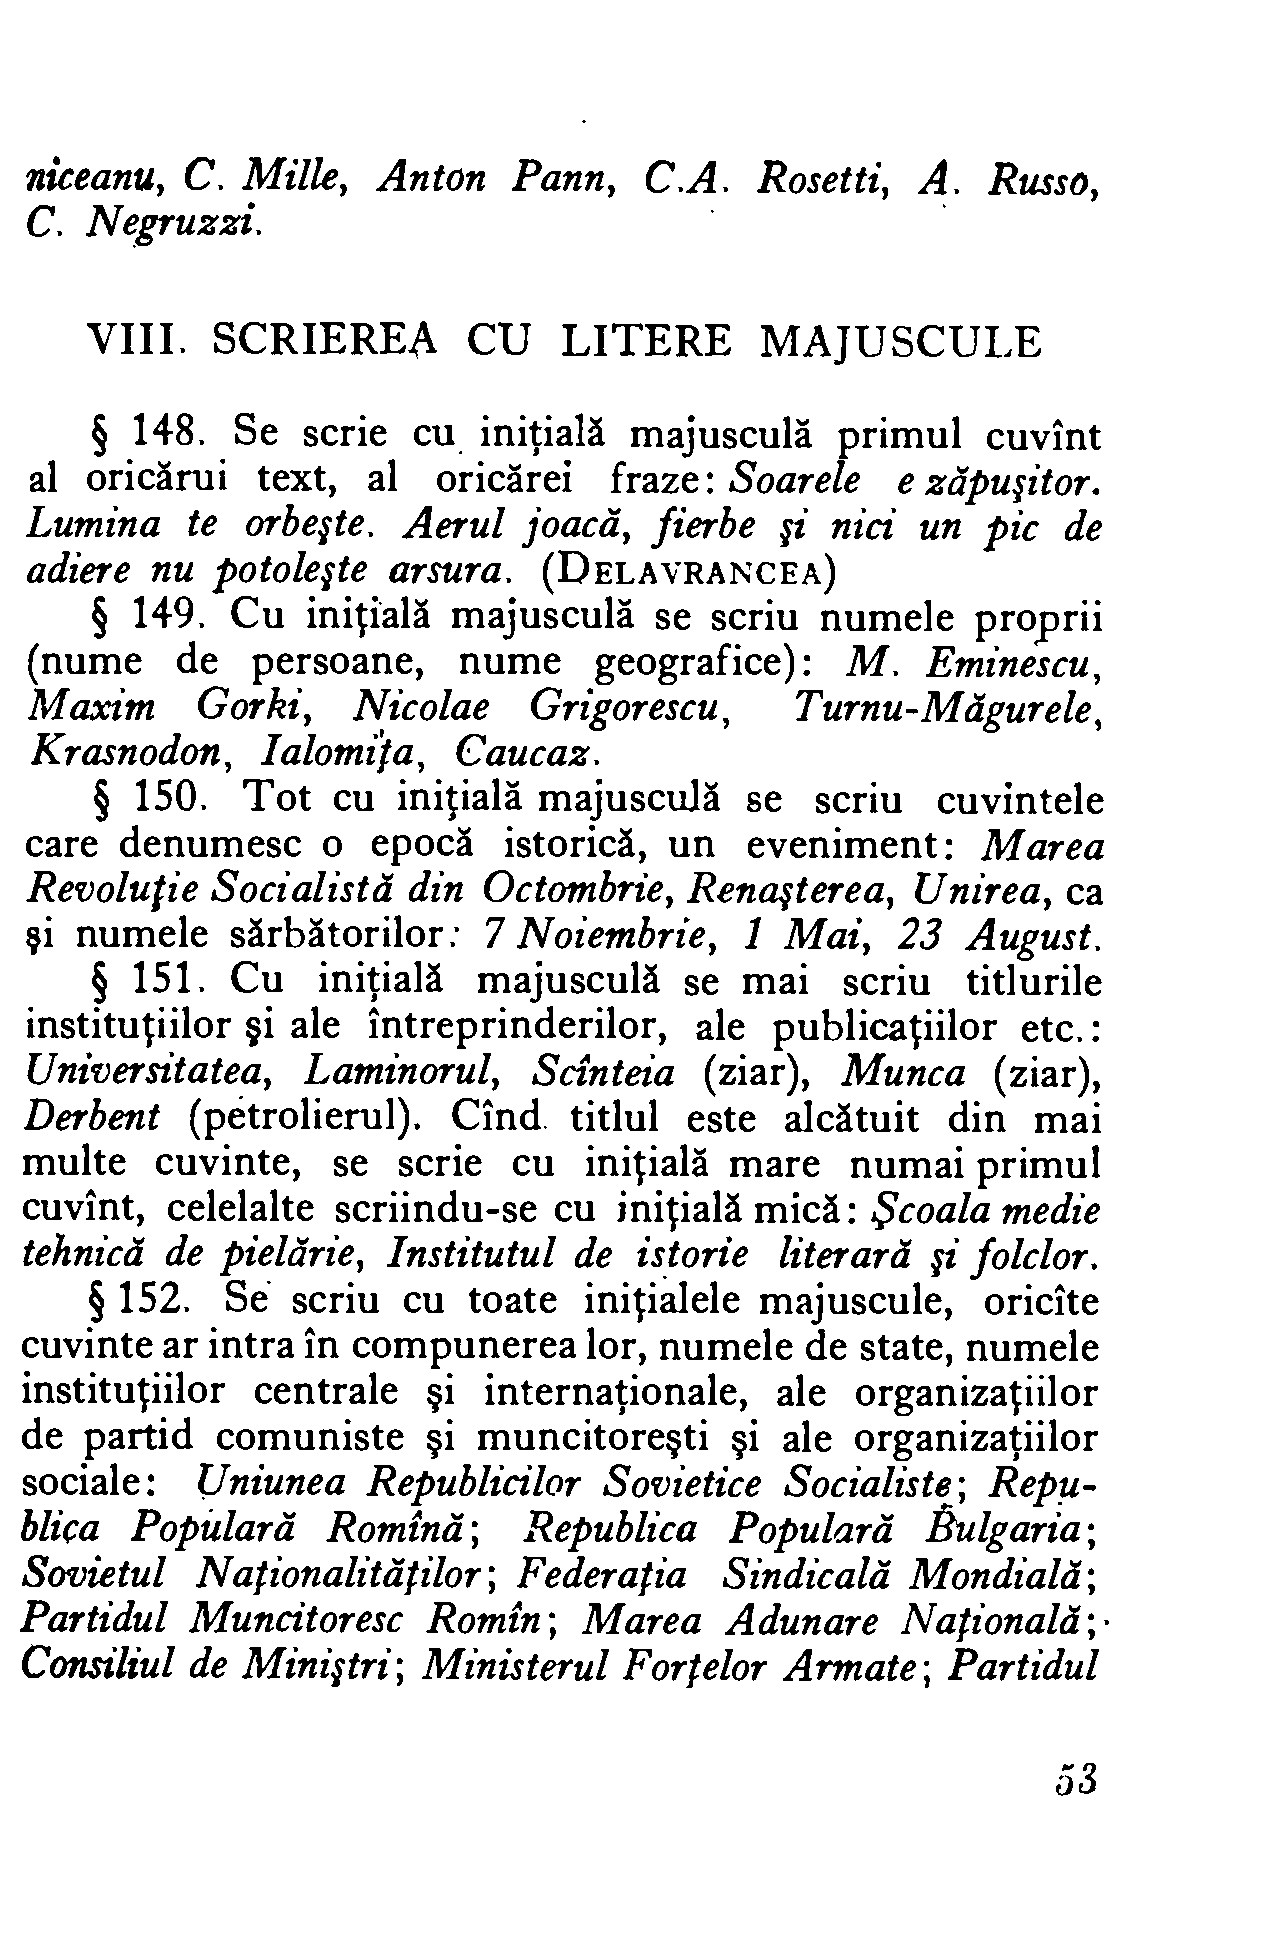 1954 - Mic dicționar ortografic (51).png